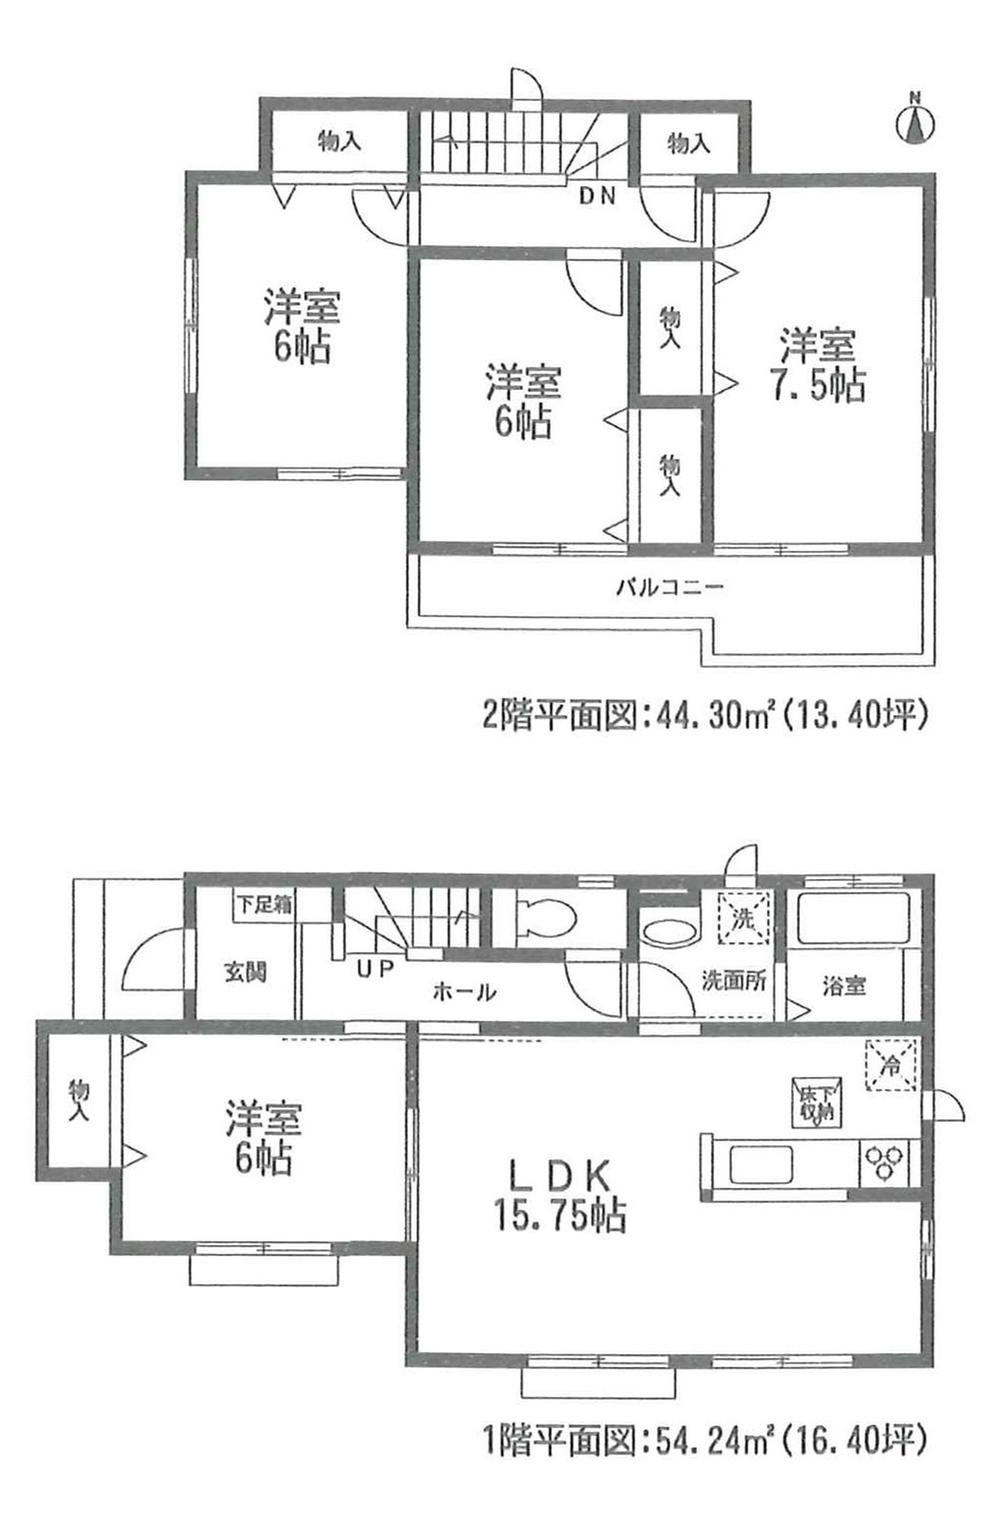 Floor plan. (A Building), Price 22,800,000 yen, 4LDK, Land area 139.91 sq m , Building area 98.54 sq m